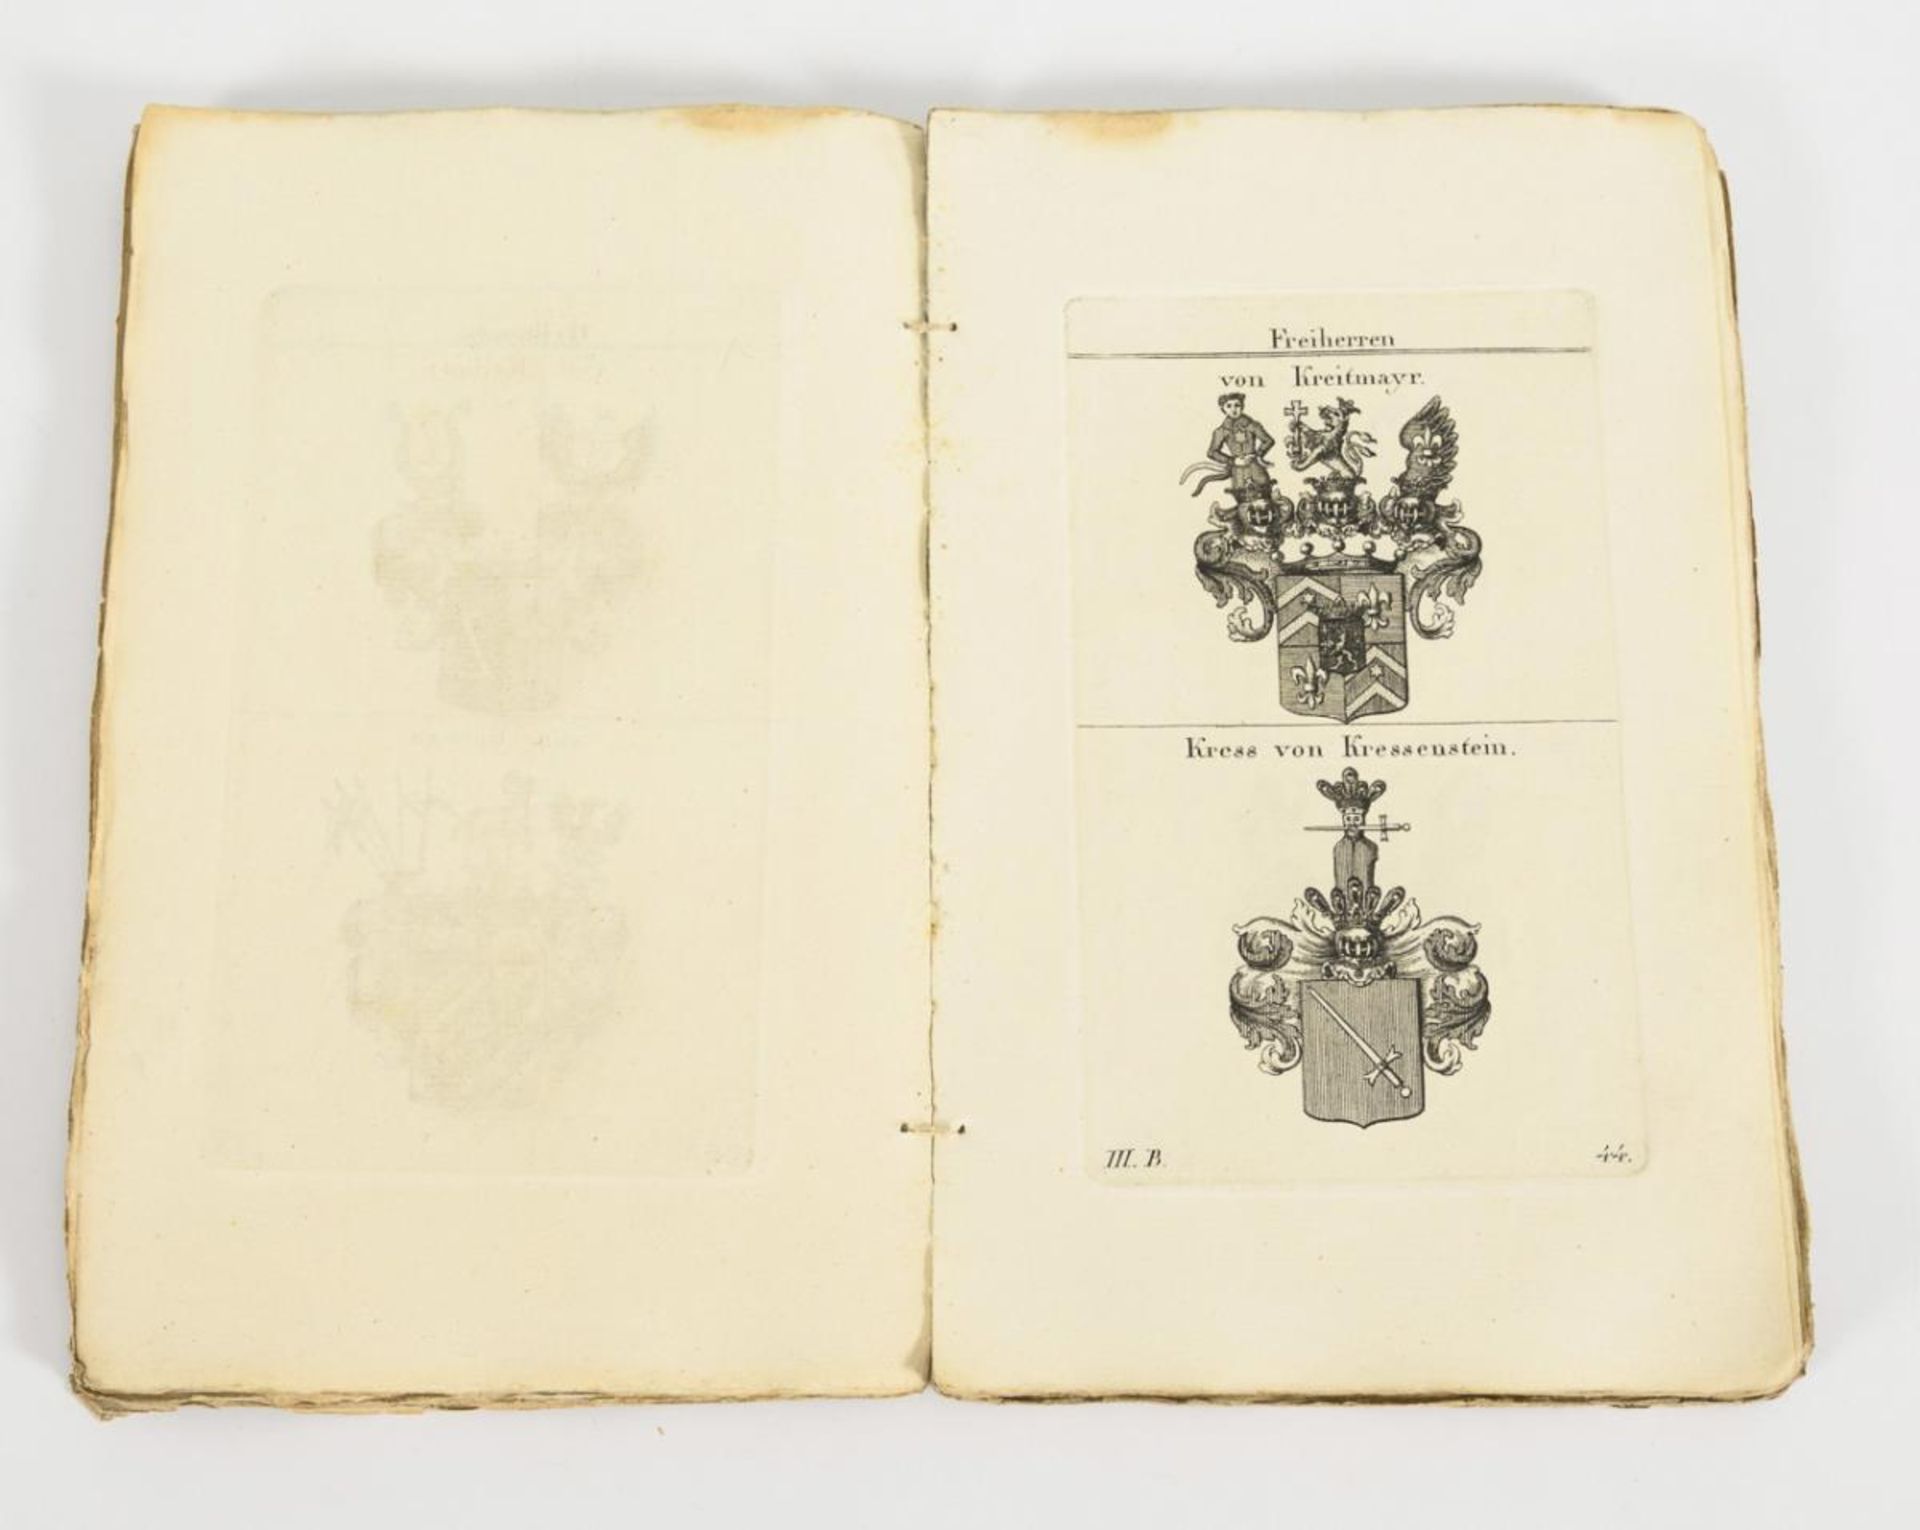 TYROFF, Konrad. "Wappenbuch des gesammten Adels des Königreichs Baiern", III. Band. - Image 3 of 3